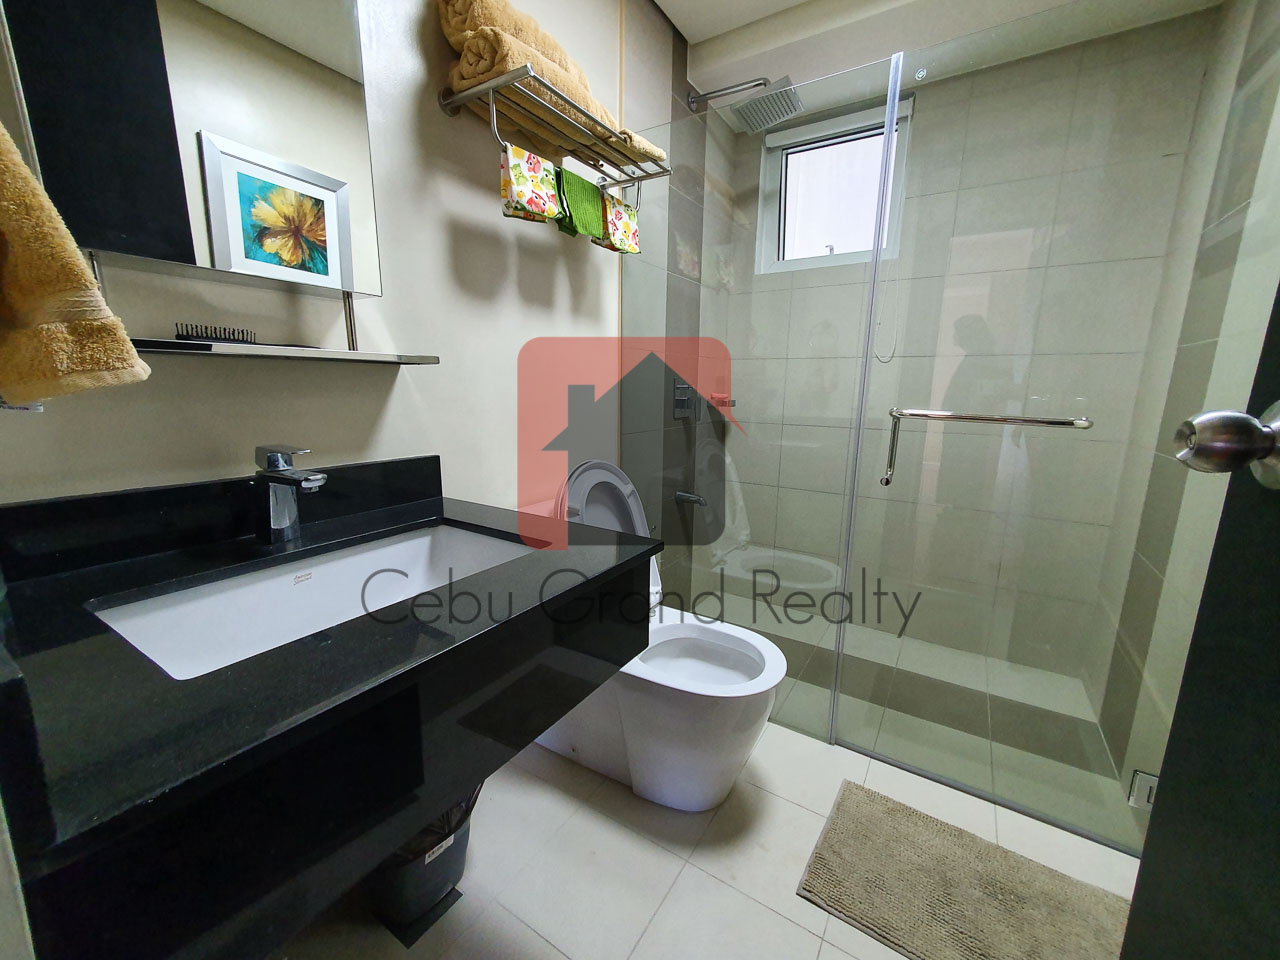 SRBS1 2 Bedroom Condo for Sale in Cebu Business Park Cebu Grand Realty-9